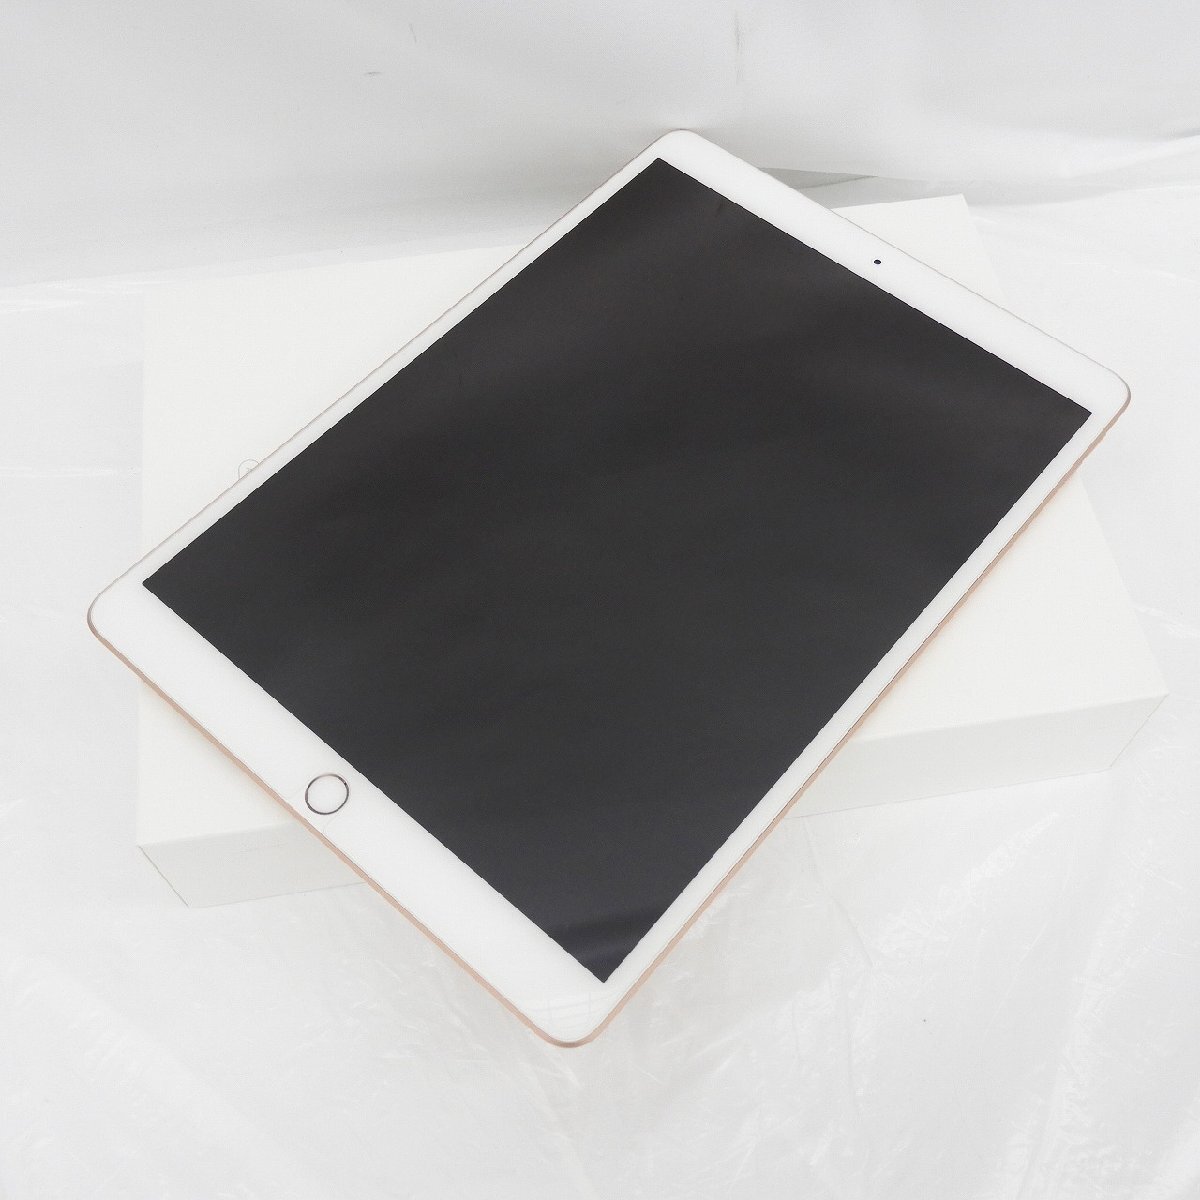 【美品】Apple アップル タブレット iPad Air 第3世代 整備済製品(リファービッシュ品) FUUL2J/A Wi-Fiモデル 64GB ゴールド 11541804 0405の画像1